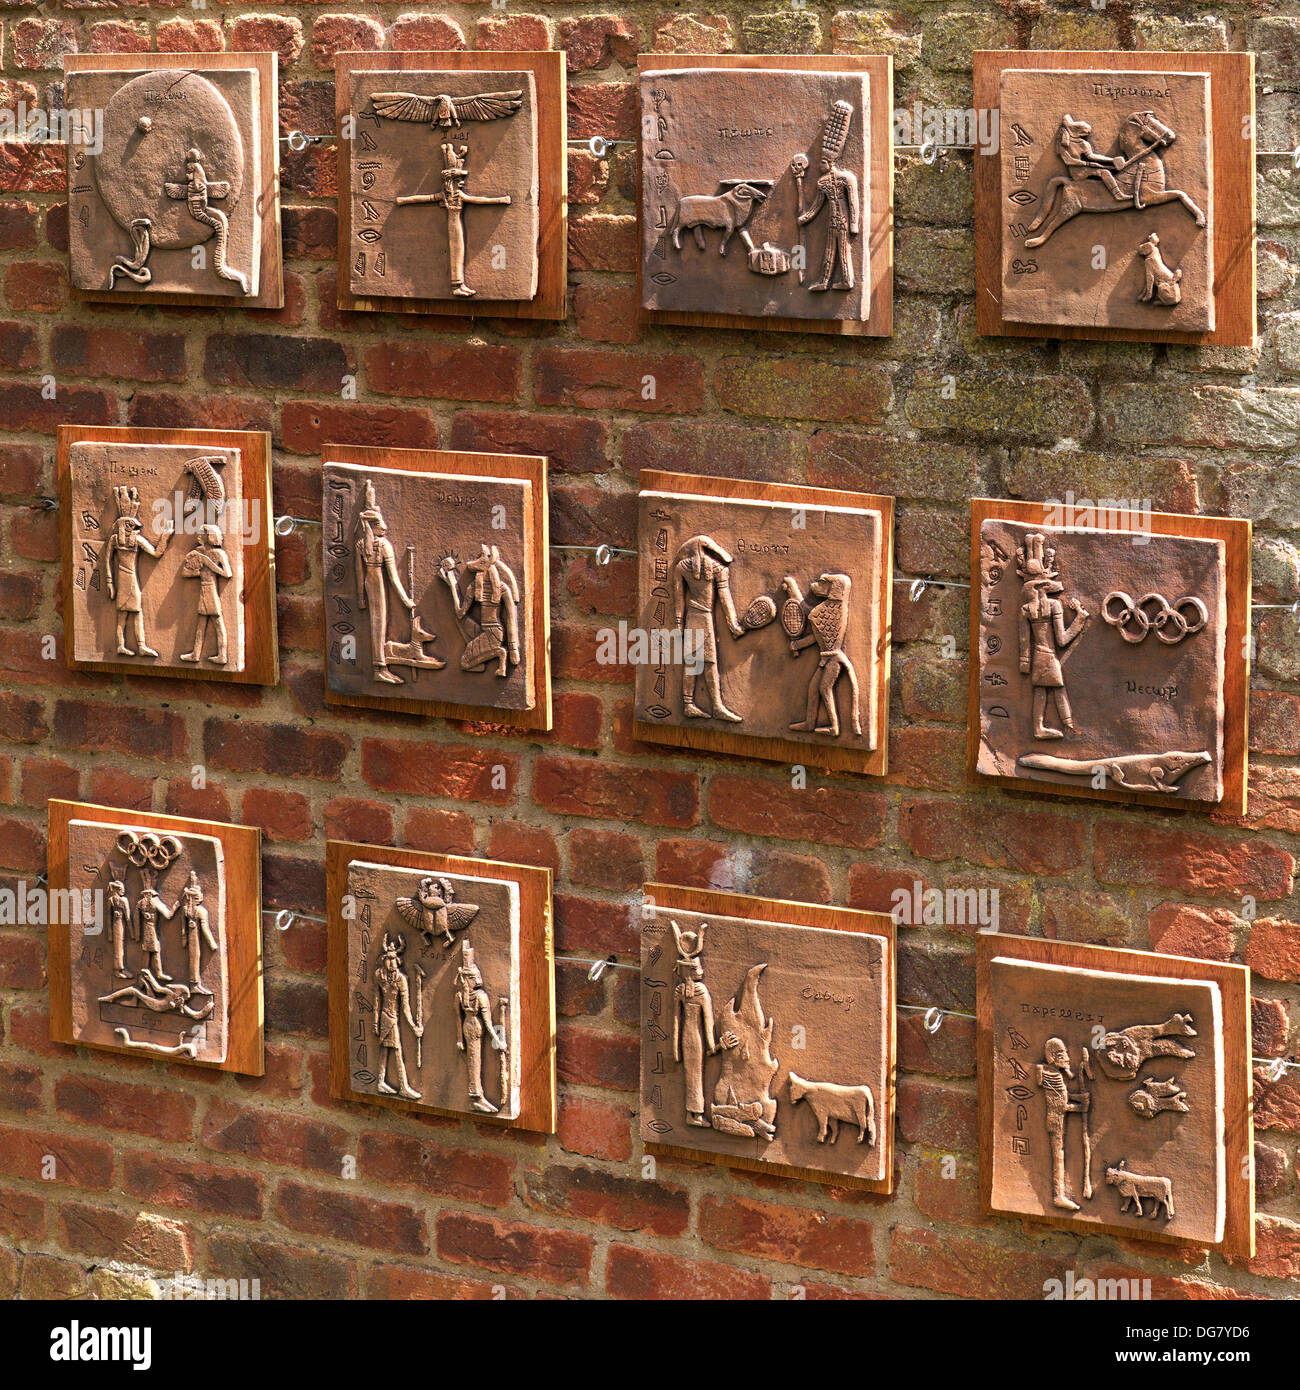 Hiéroglyphe égyptien de l'oeuvre inspirée des carreaux de céramique sur mur de brique rouge Barnsdale Jardins, Oakham, Rutland, England, UK. Banque D'Images